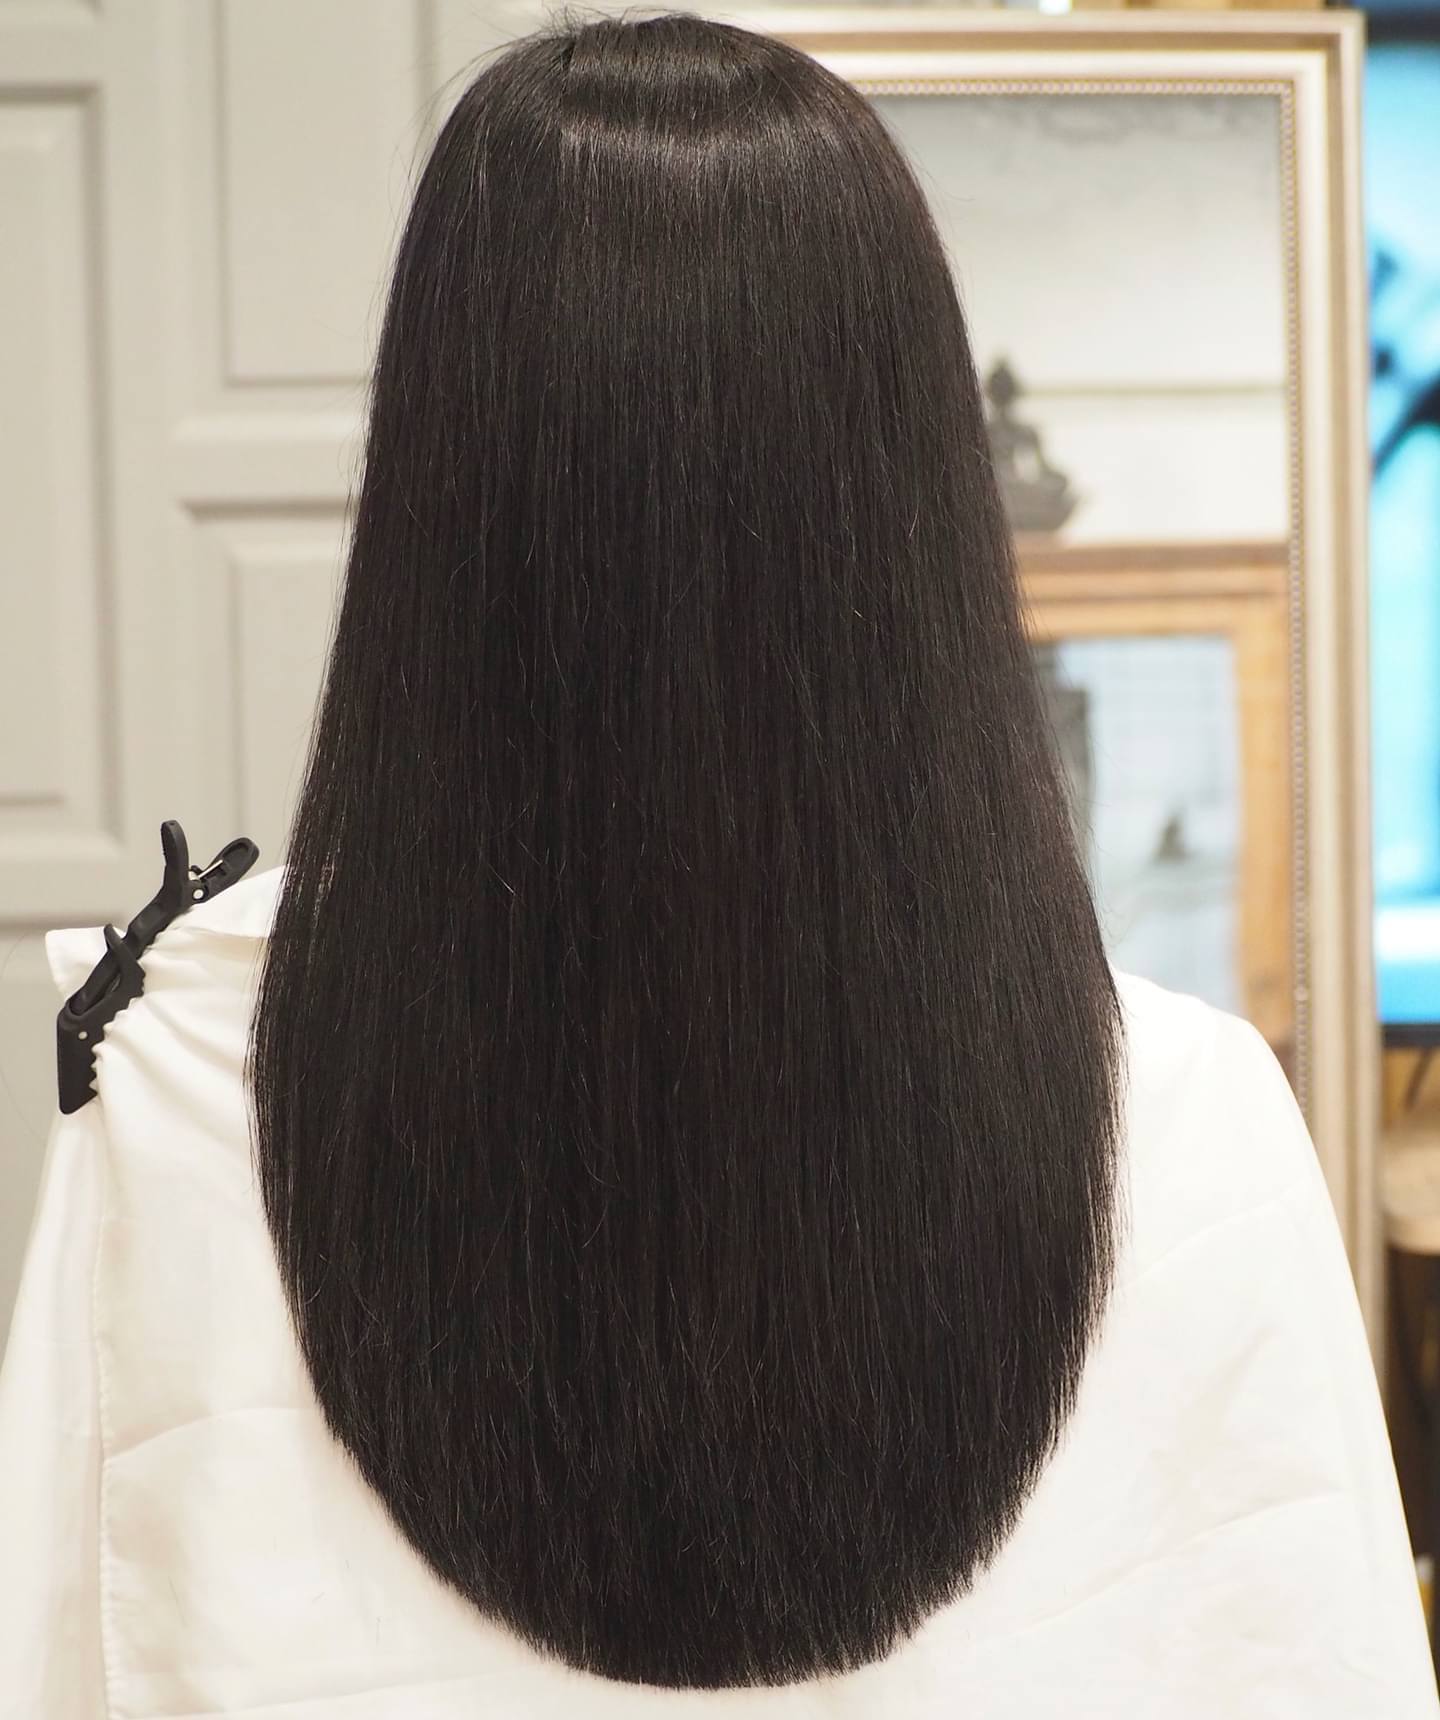 Стрижка-подкова придает объем редким и тонким волосам: как выглядит модная прическа